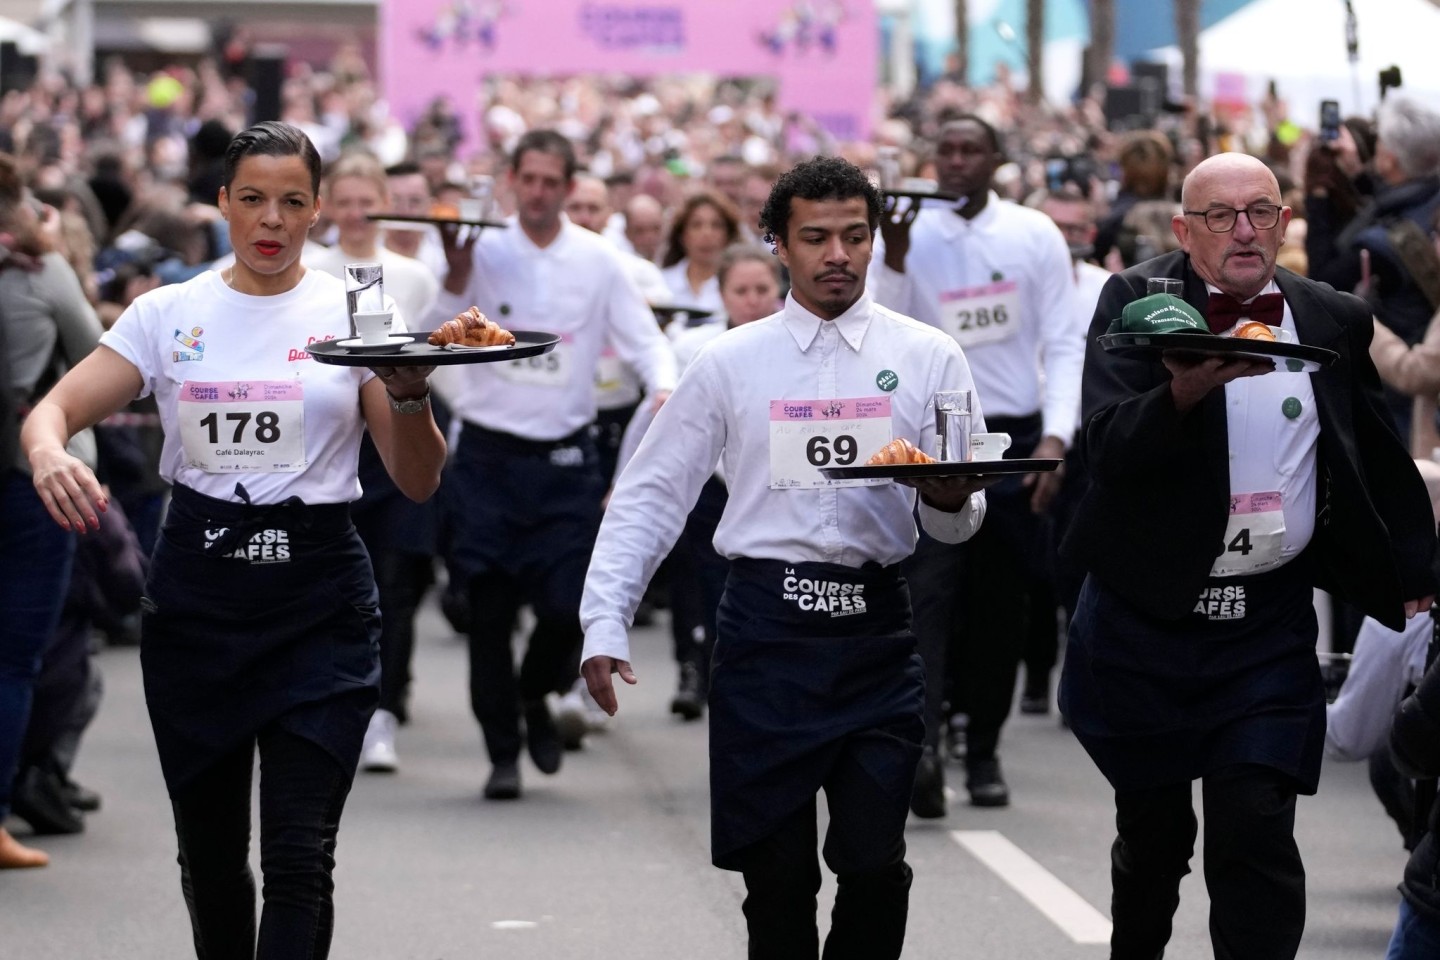 Zwei Kilometer ohne zu rennen und ohne etwas zu verschütten: Dieser Aufgabe stellen sich Kellnerinnen und Kellner in Paris.